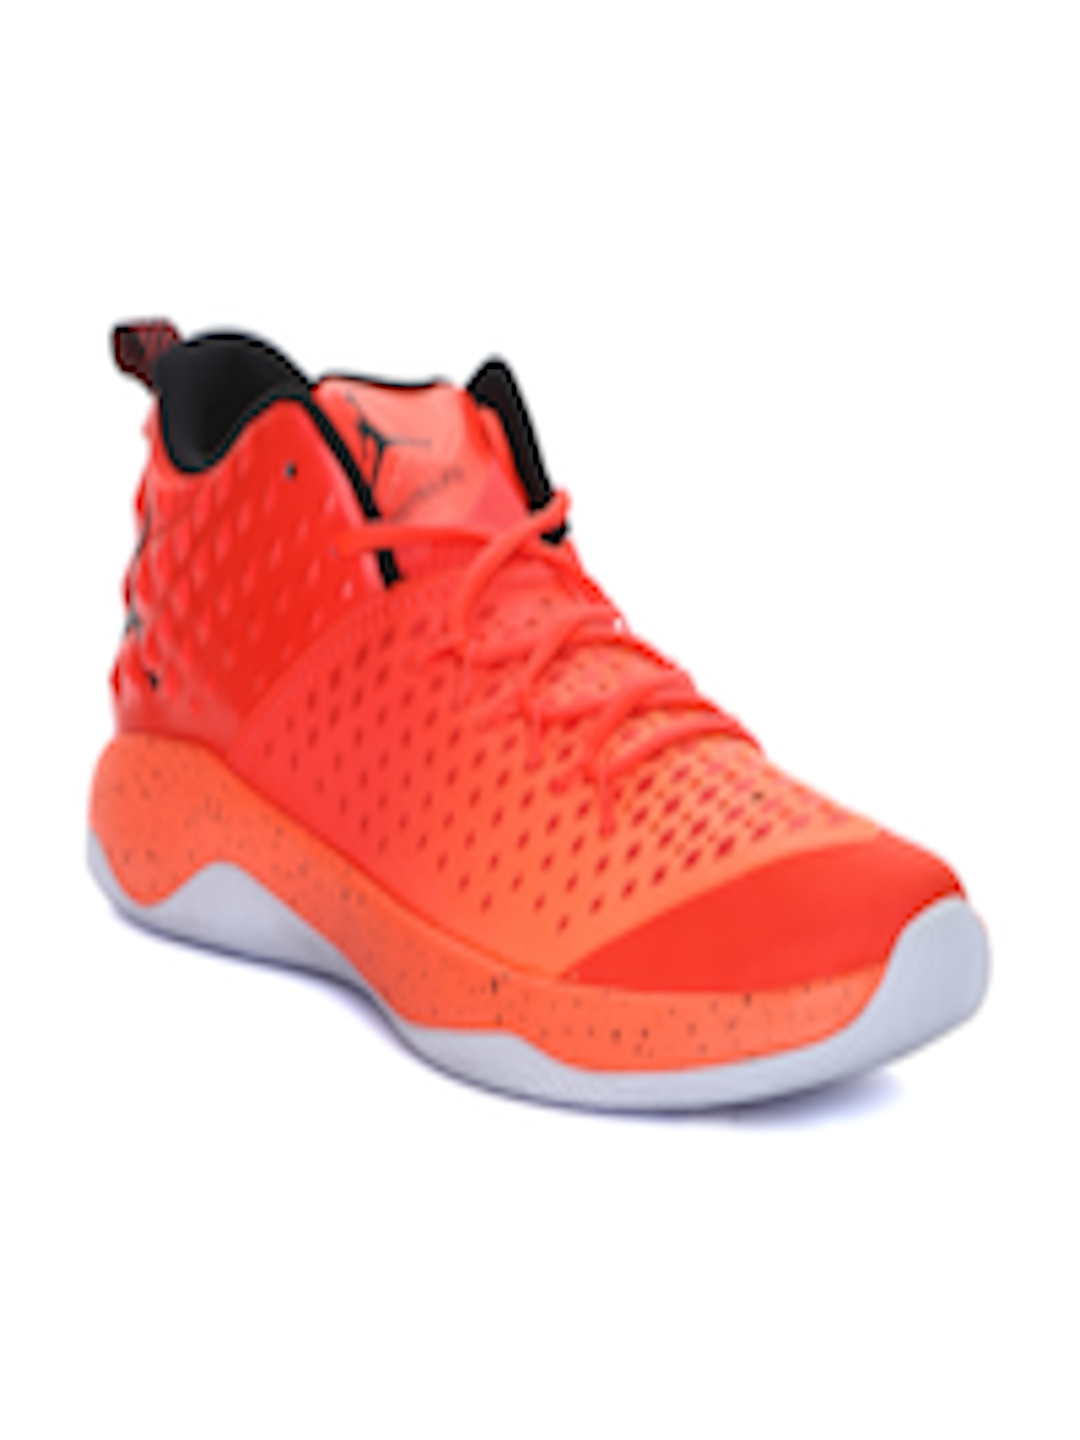 Buy Nike Men Neon Orange Jordan Extra Fly Basketball Shoes